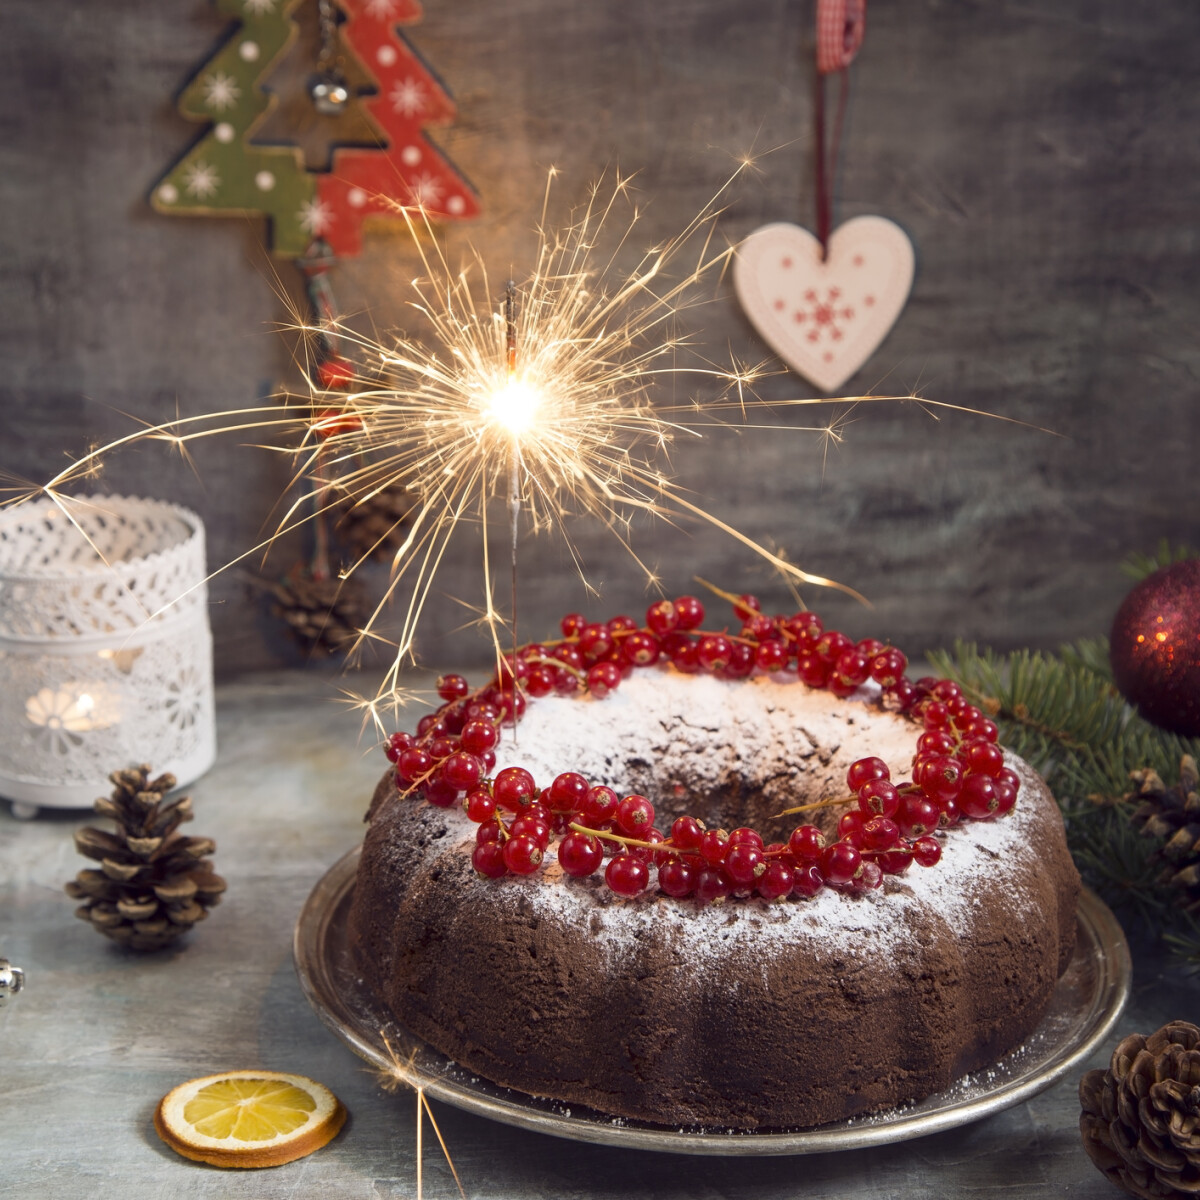 Müpa karácsony – Készítsd el Delov Jávor dobos, ütőhangszeres kedvenc ünnepi ételét